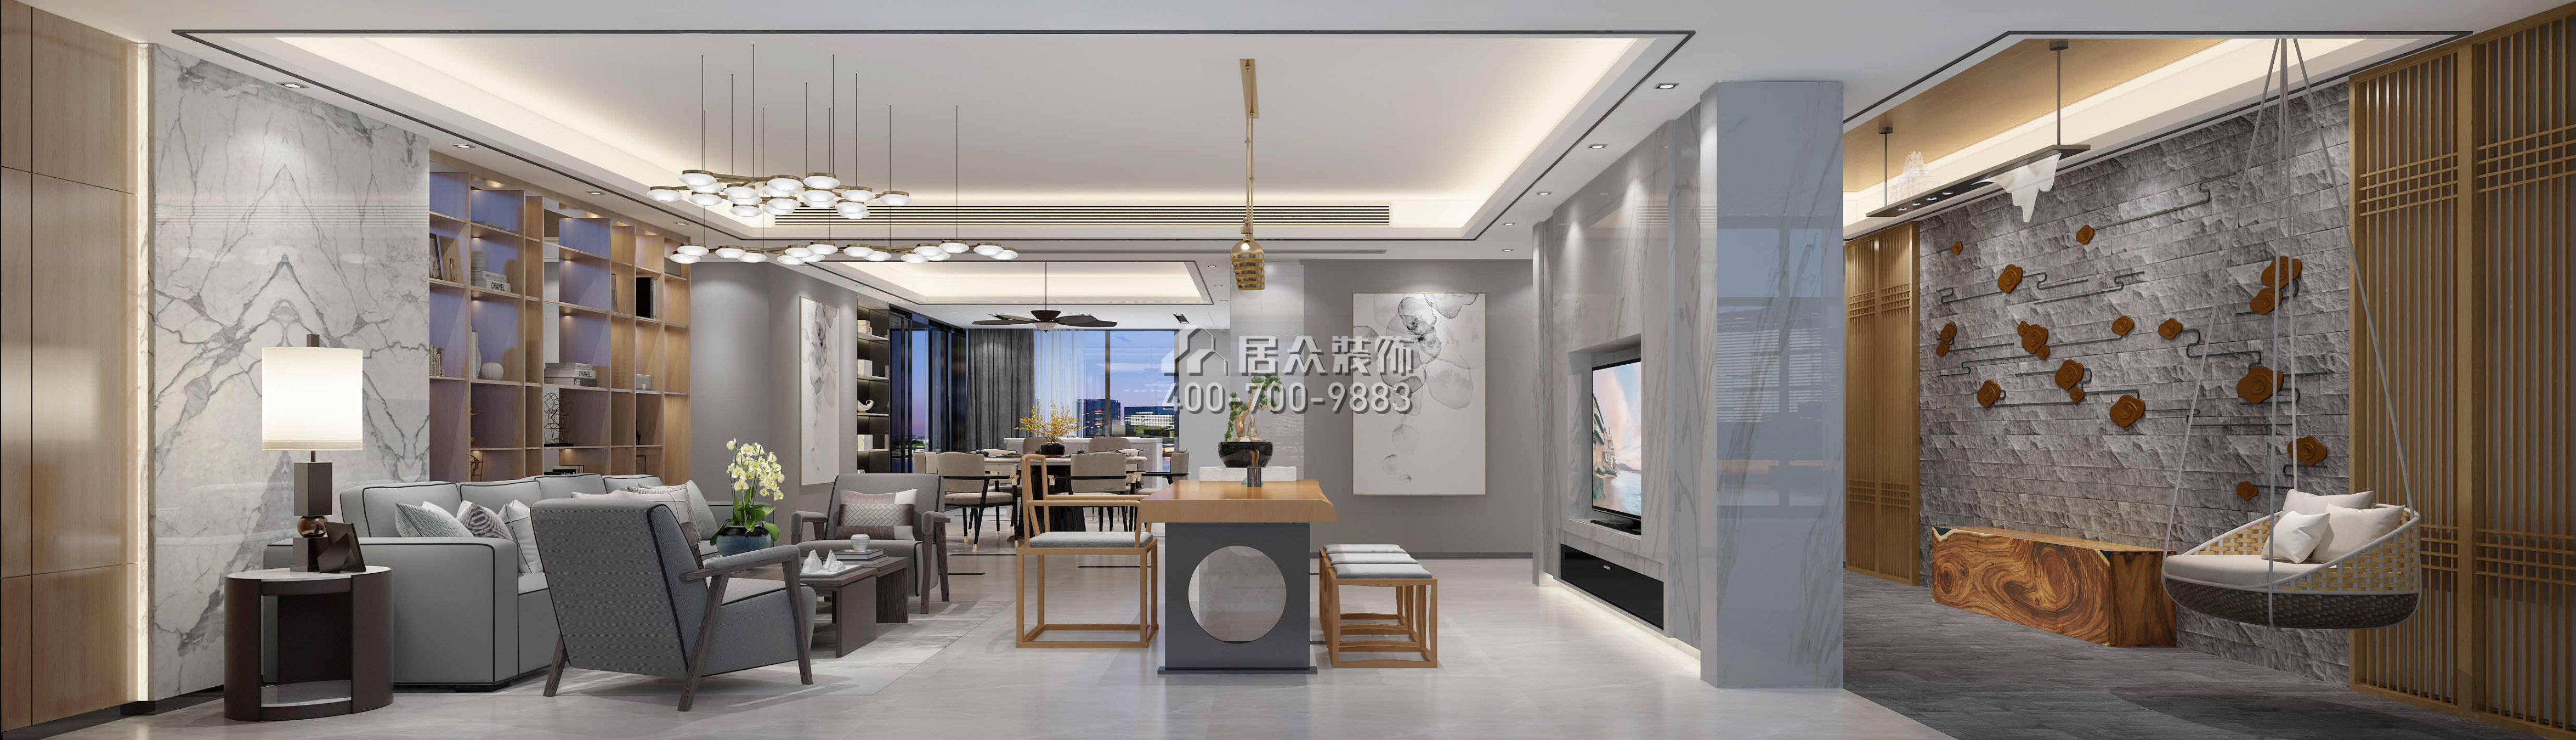 五洲花城300平方米现代简约风格平层户型客厅装修效果图